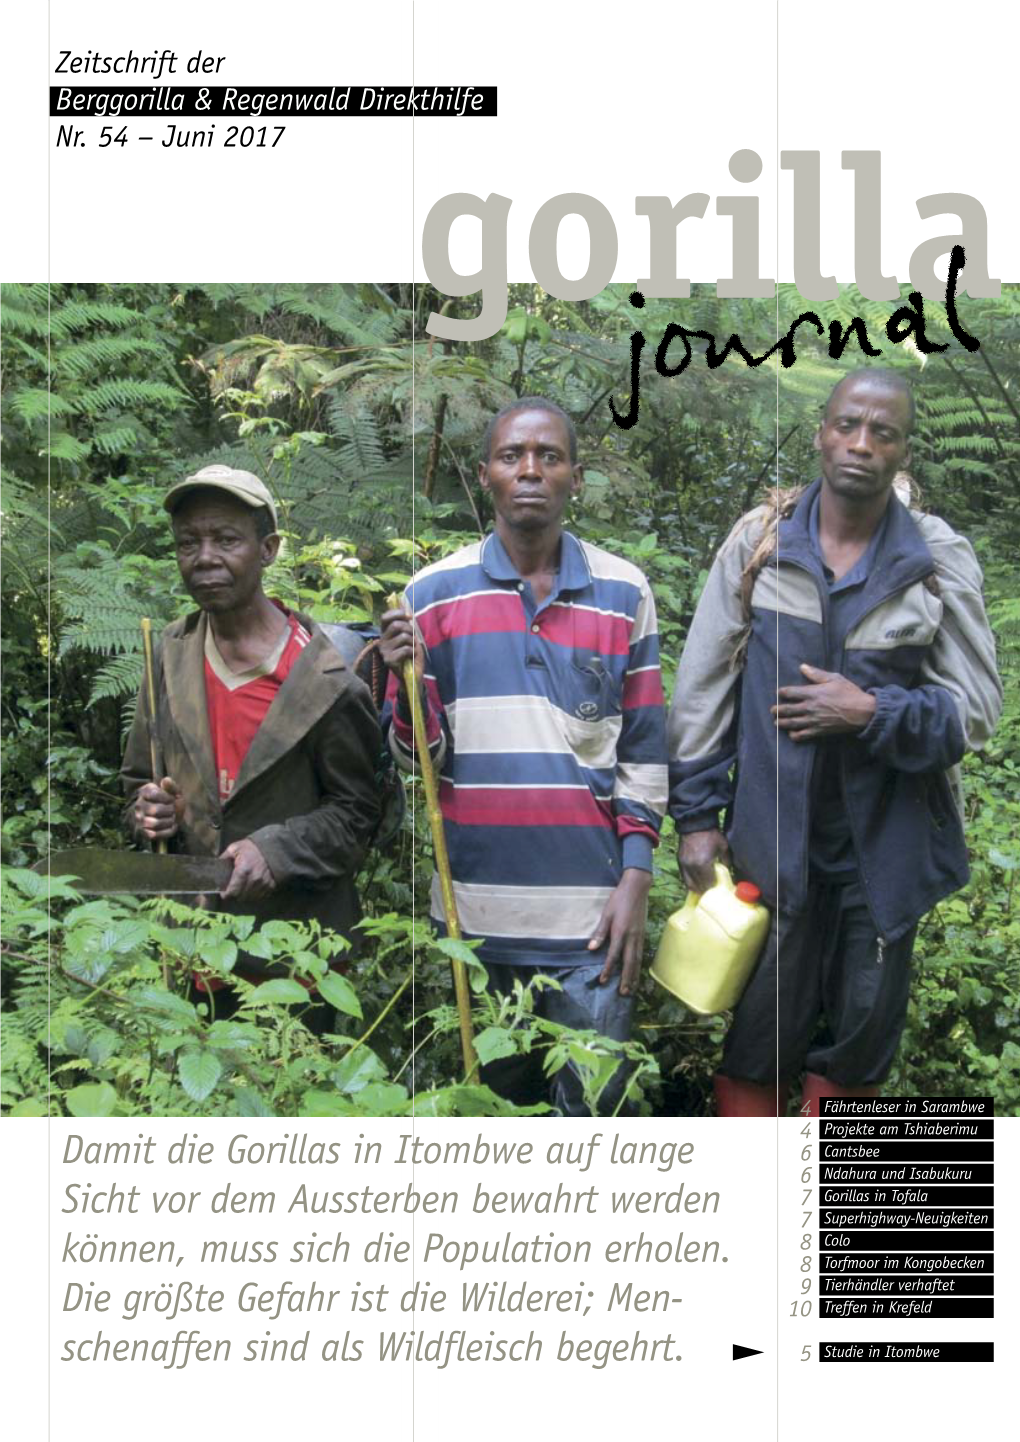 Damit Die Gorillas in Itombwe Auf Lange Sicht Vor Dem Aussterben